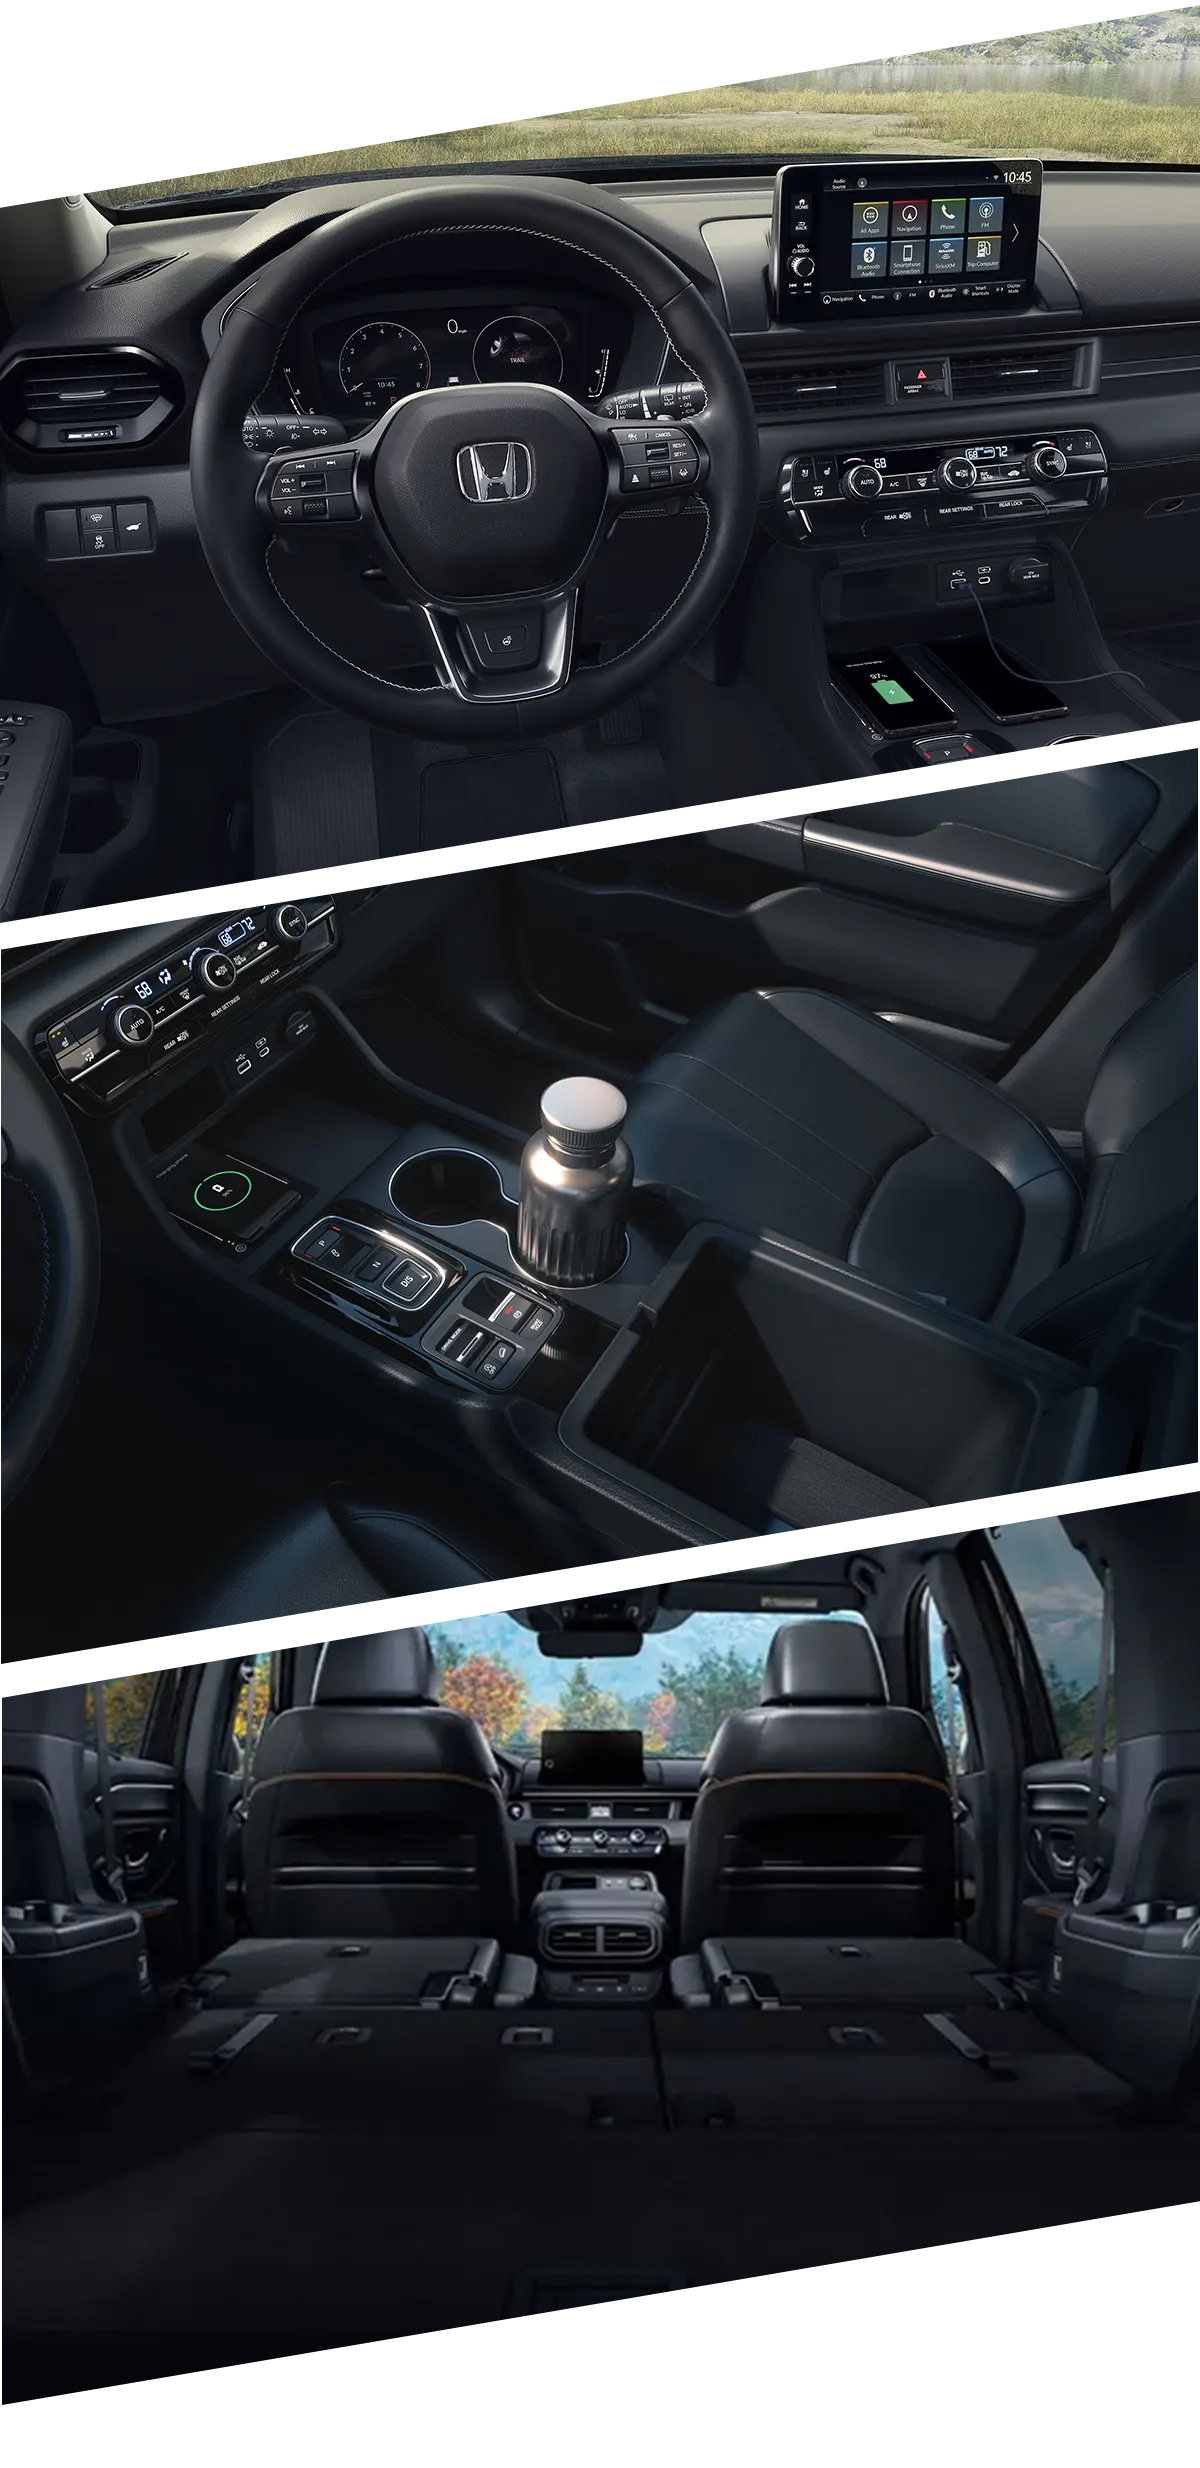 2023 Honda Pilot Interior Images